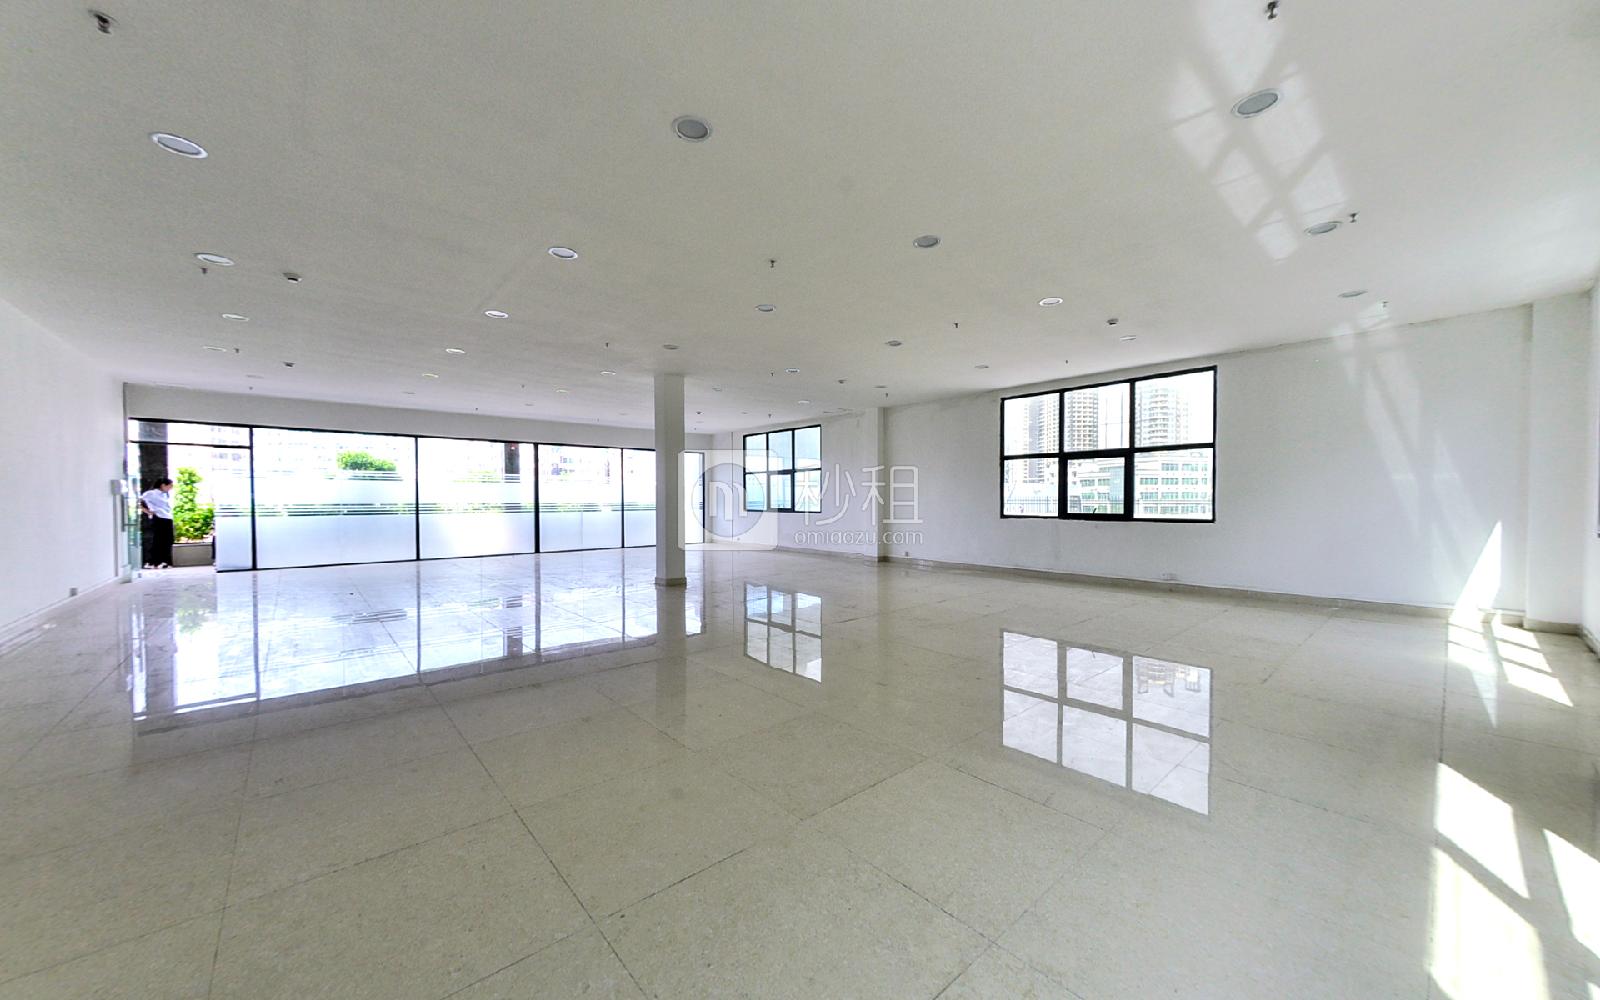 红湾商务大厦写字楼出租115平米简装办公室43元/m².月